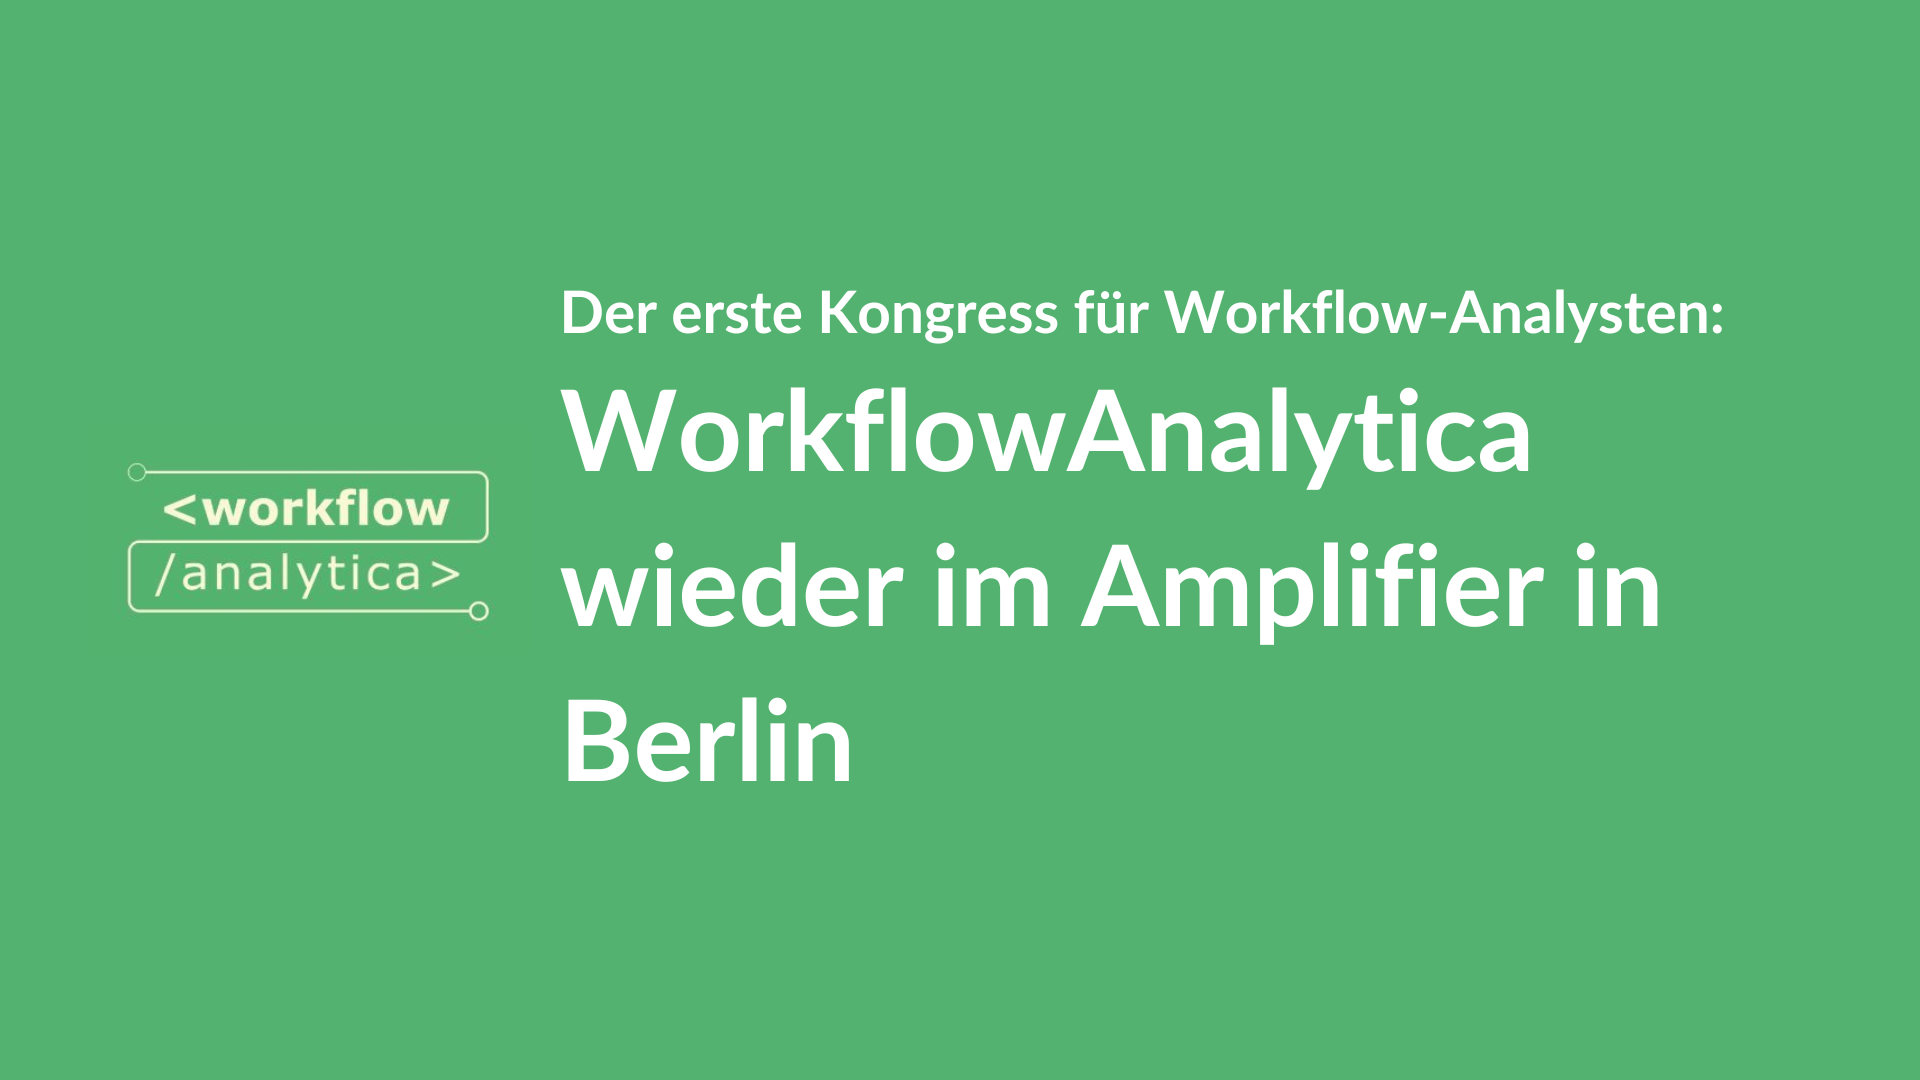 WorkflowAnalytica wieder im Amplifier in Berlin